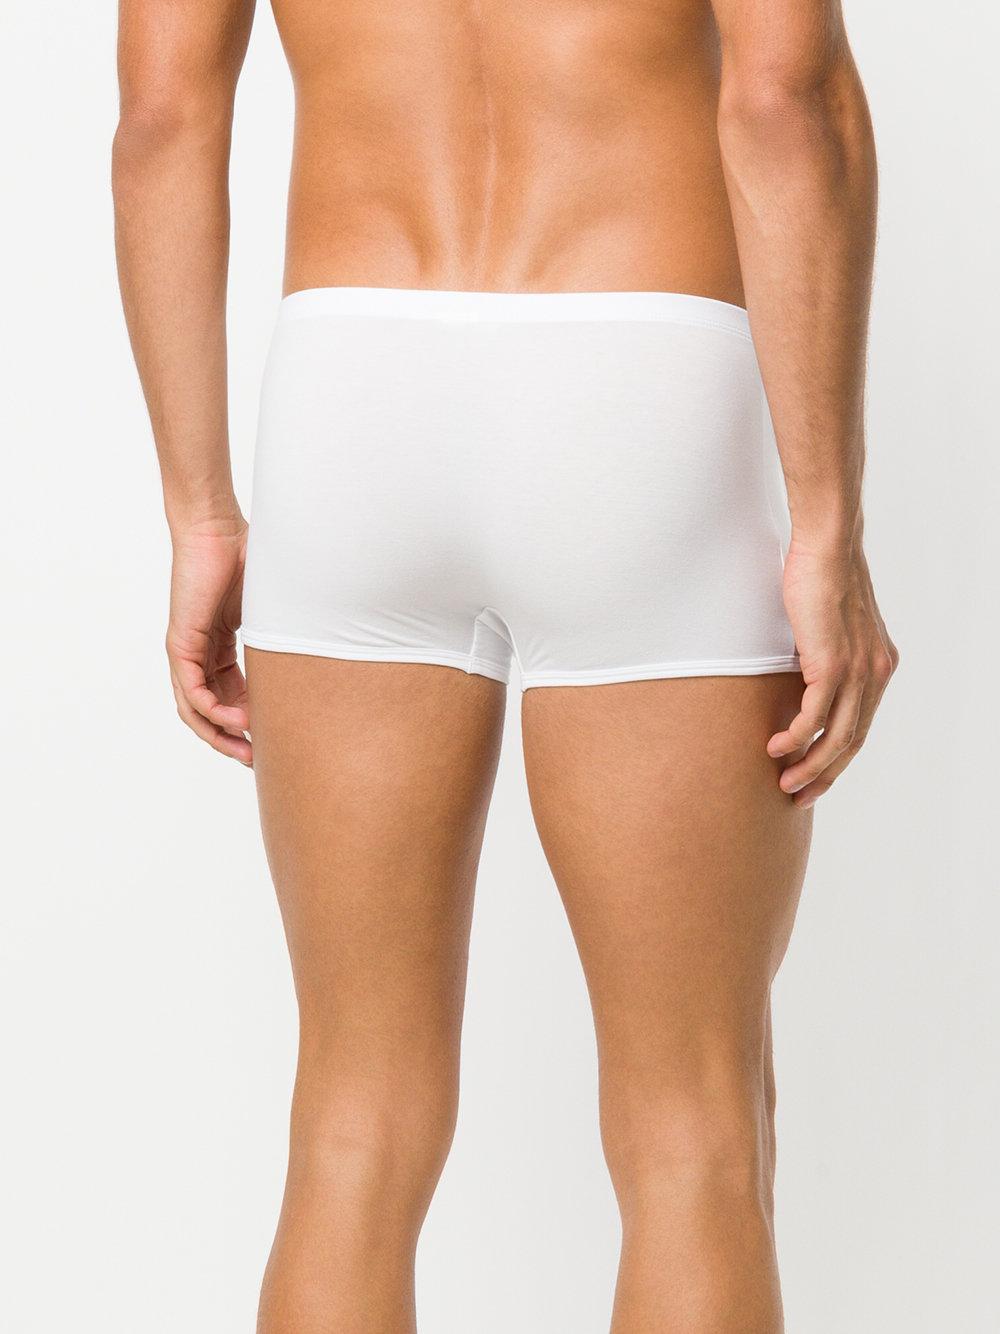 La Perla Cotton Lp Skin Boxers in White for Men - Lyst